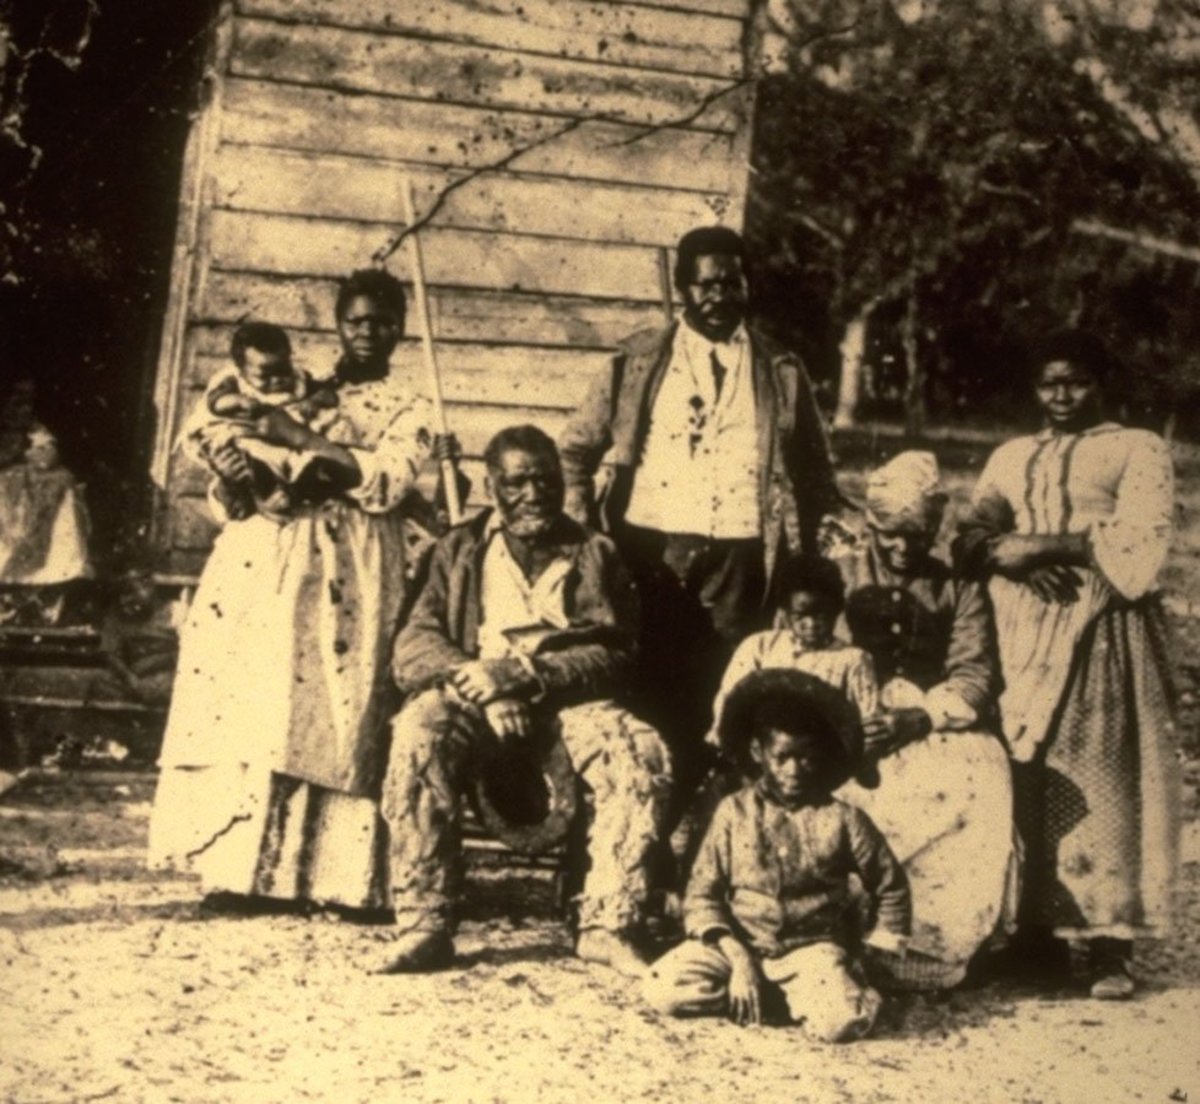 Five generations of a family born into slavery on a South Carolina plantation